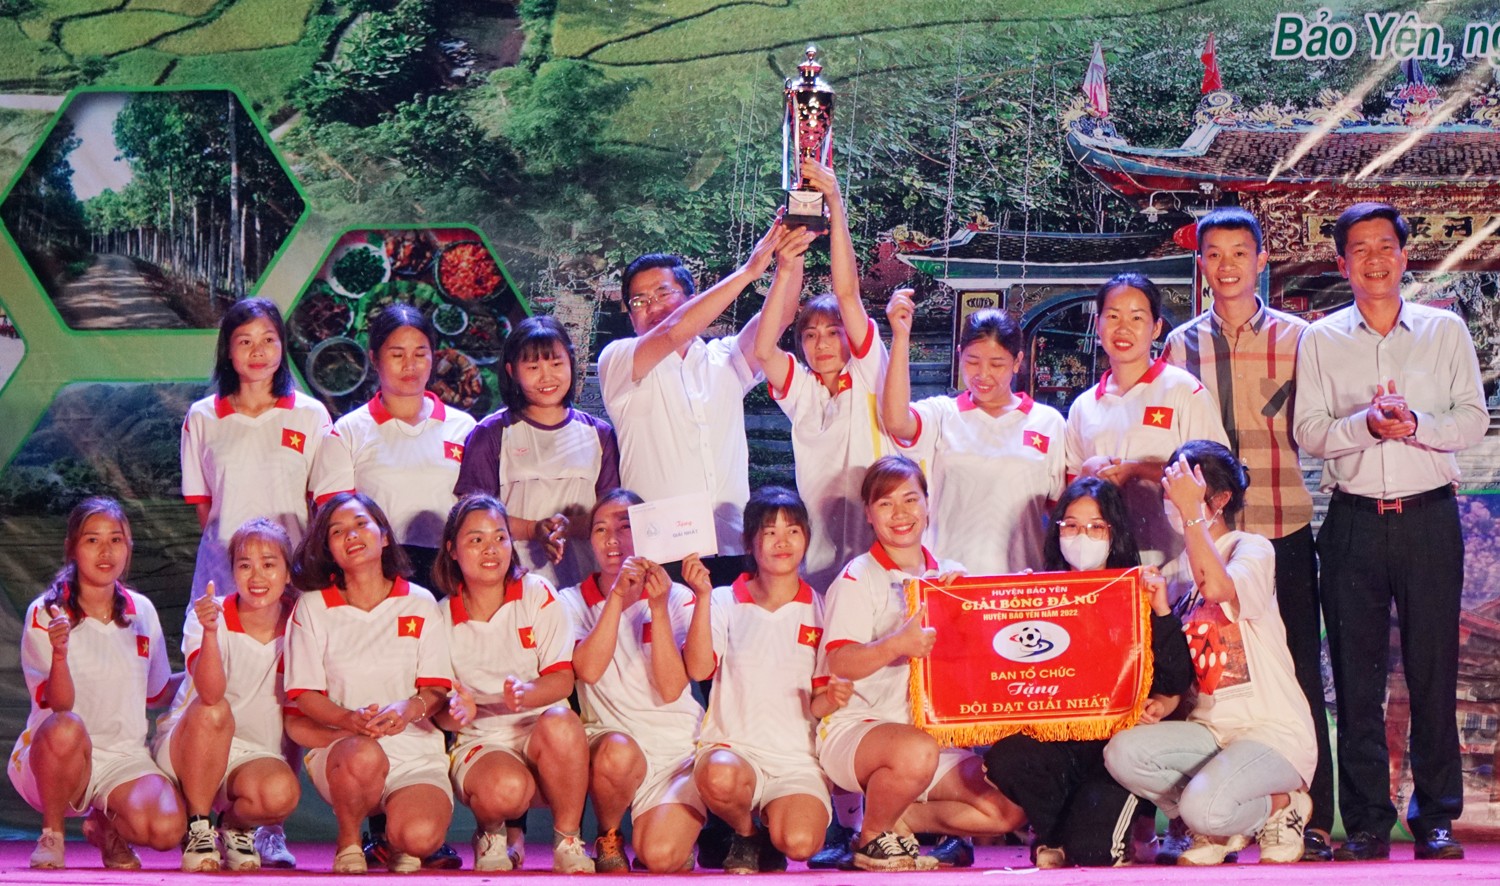 Trao giải Nhất Giải bóng đá nữ huyện Bảo Yên